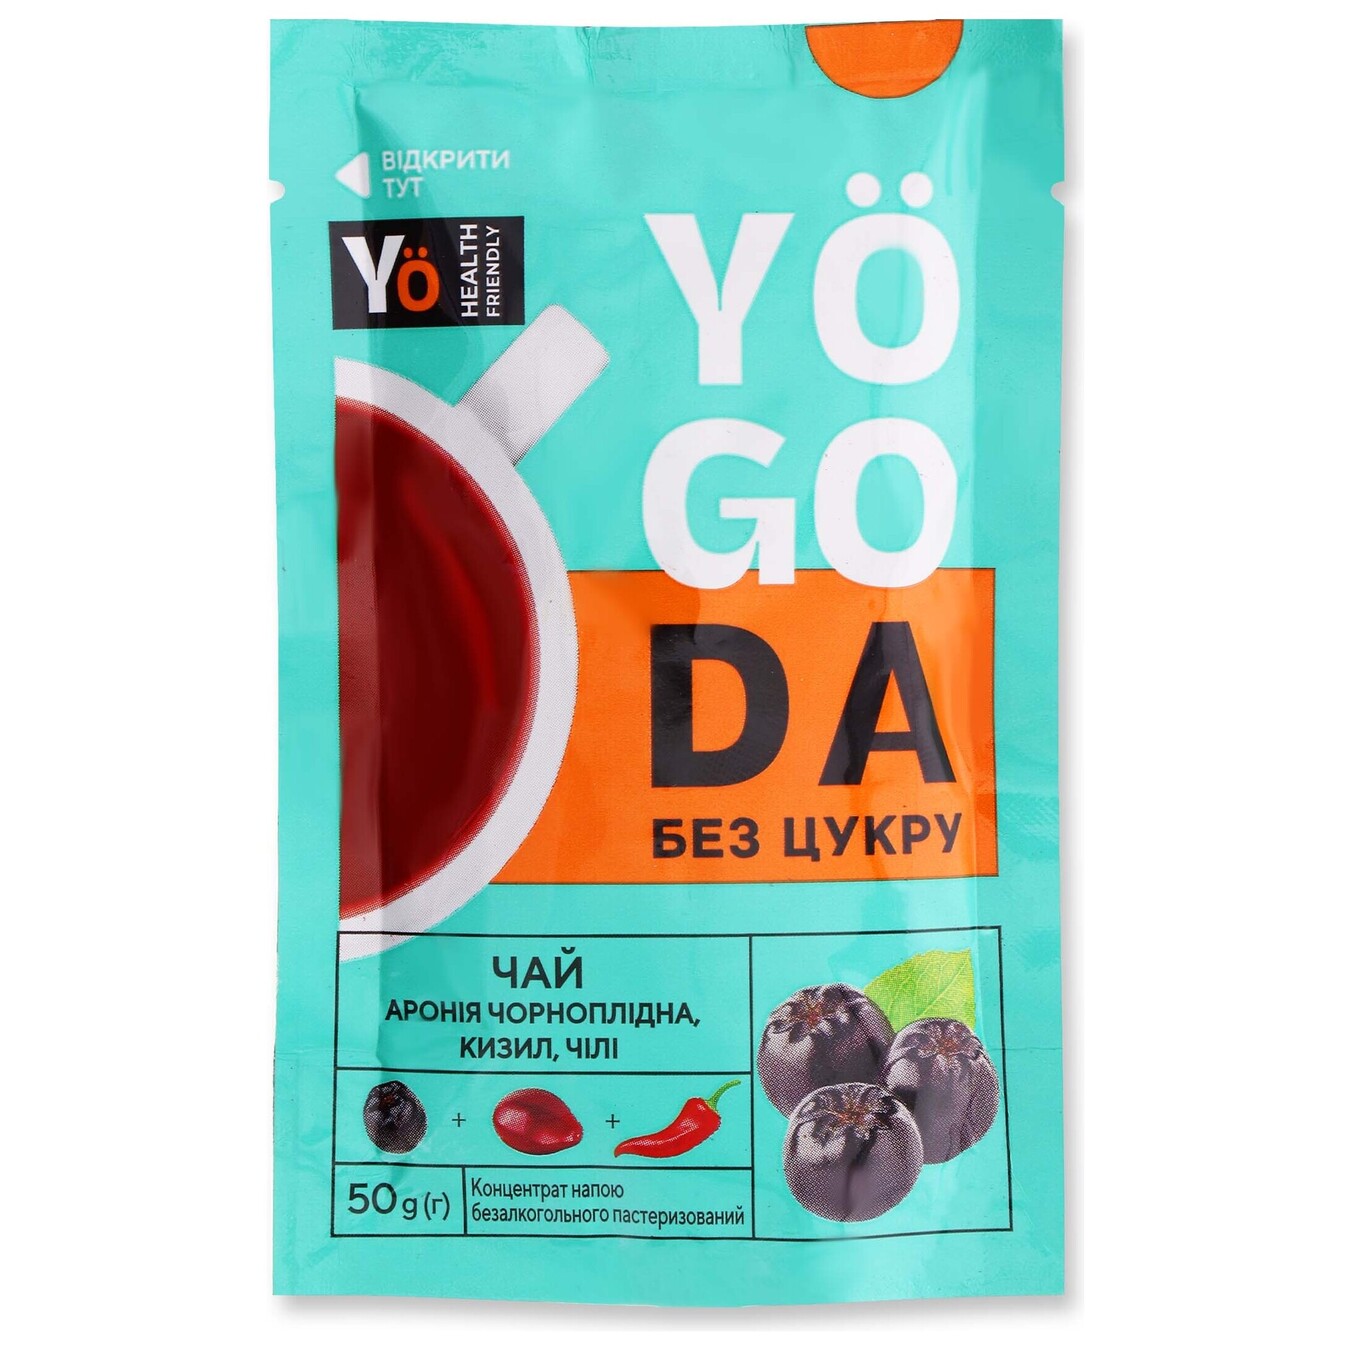 Tea concentrate Yogoda black chokeberry-cornel-chili 50g